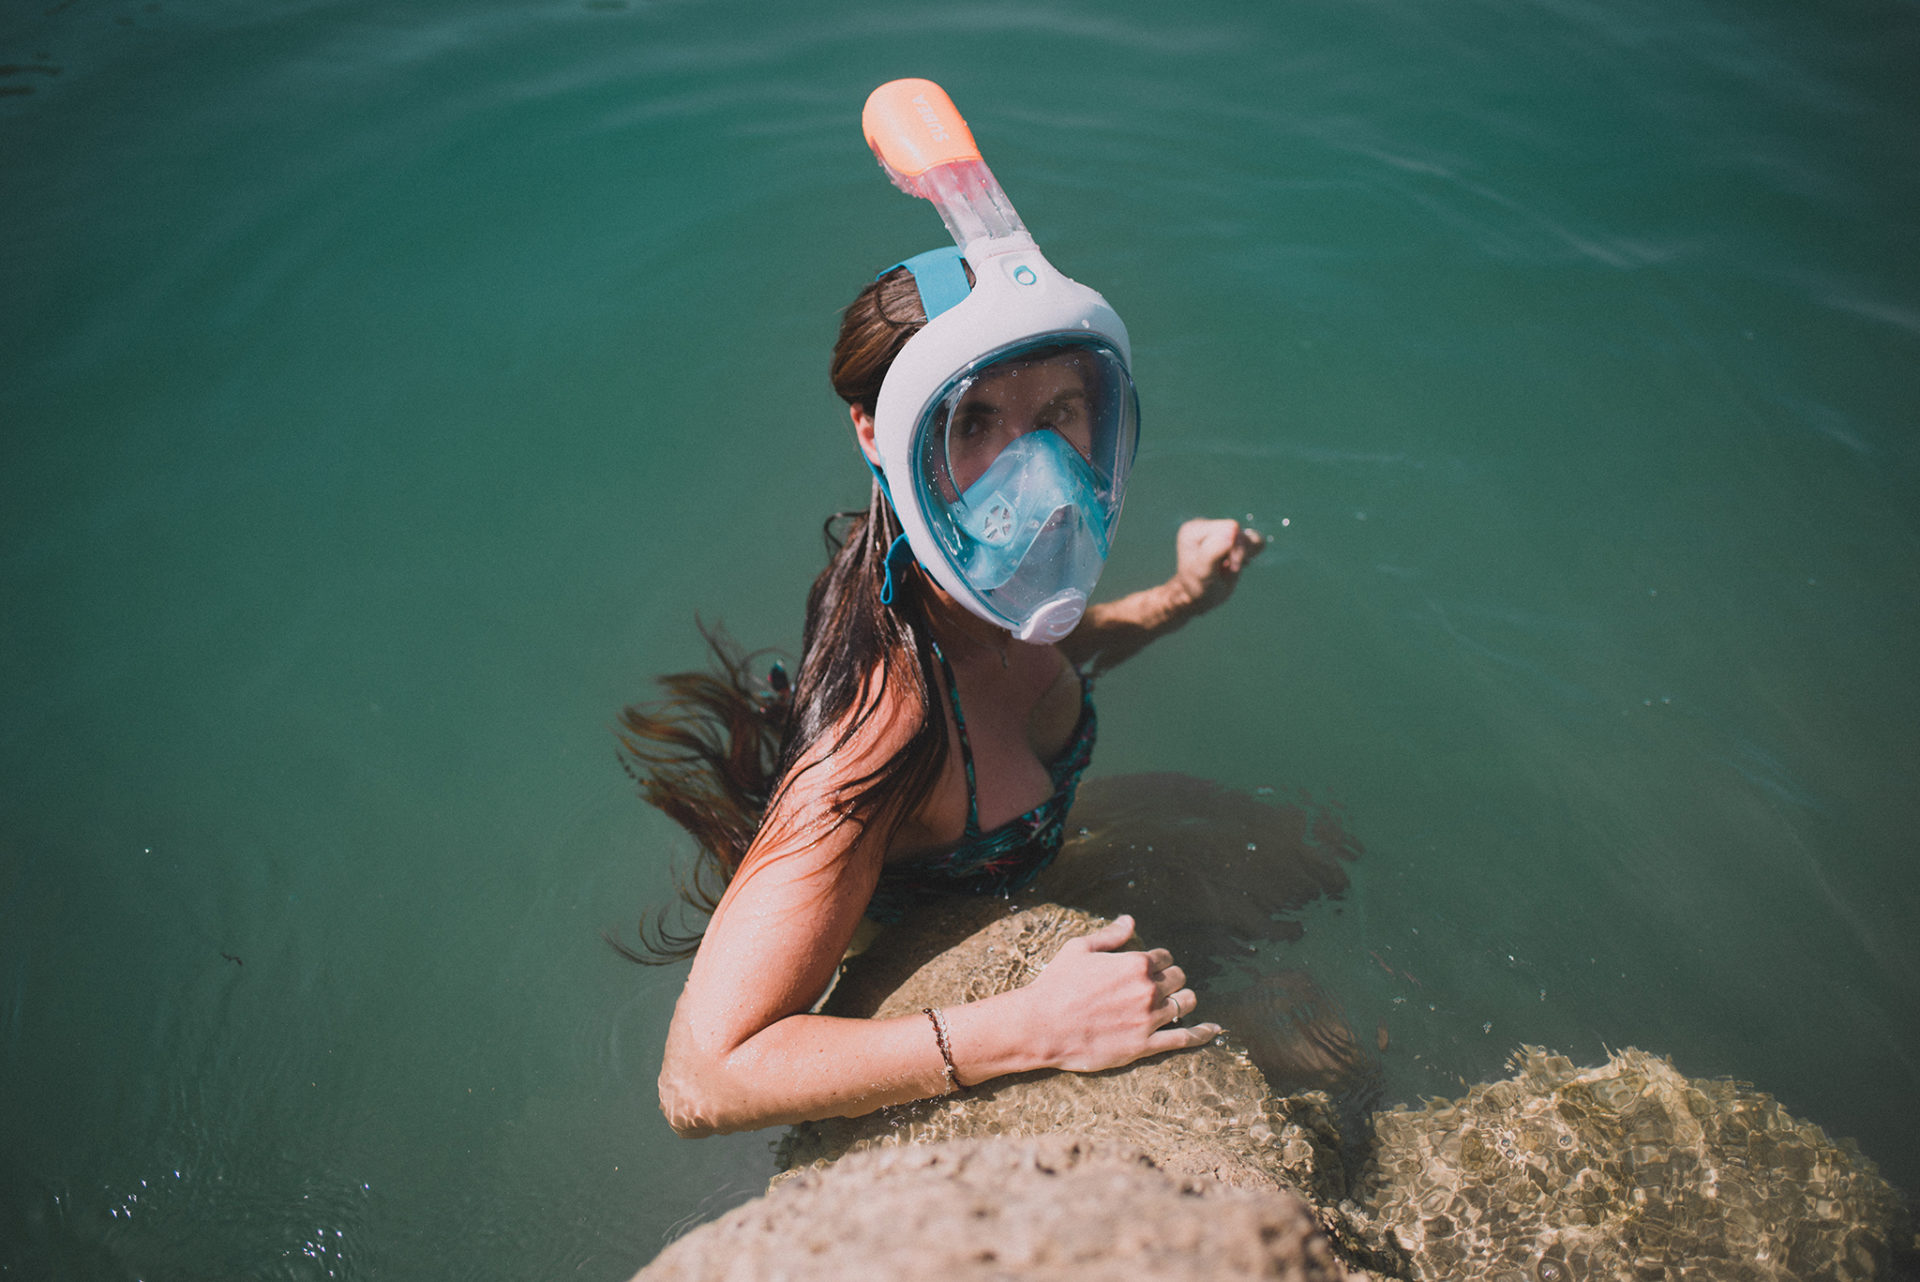 Decathlon El Djazair - Respirer sous l'eau ? C'est possible grâce au Masque  Easybreath. Stock limité. #DecathlonElDjazair